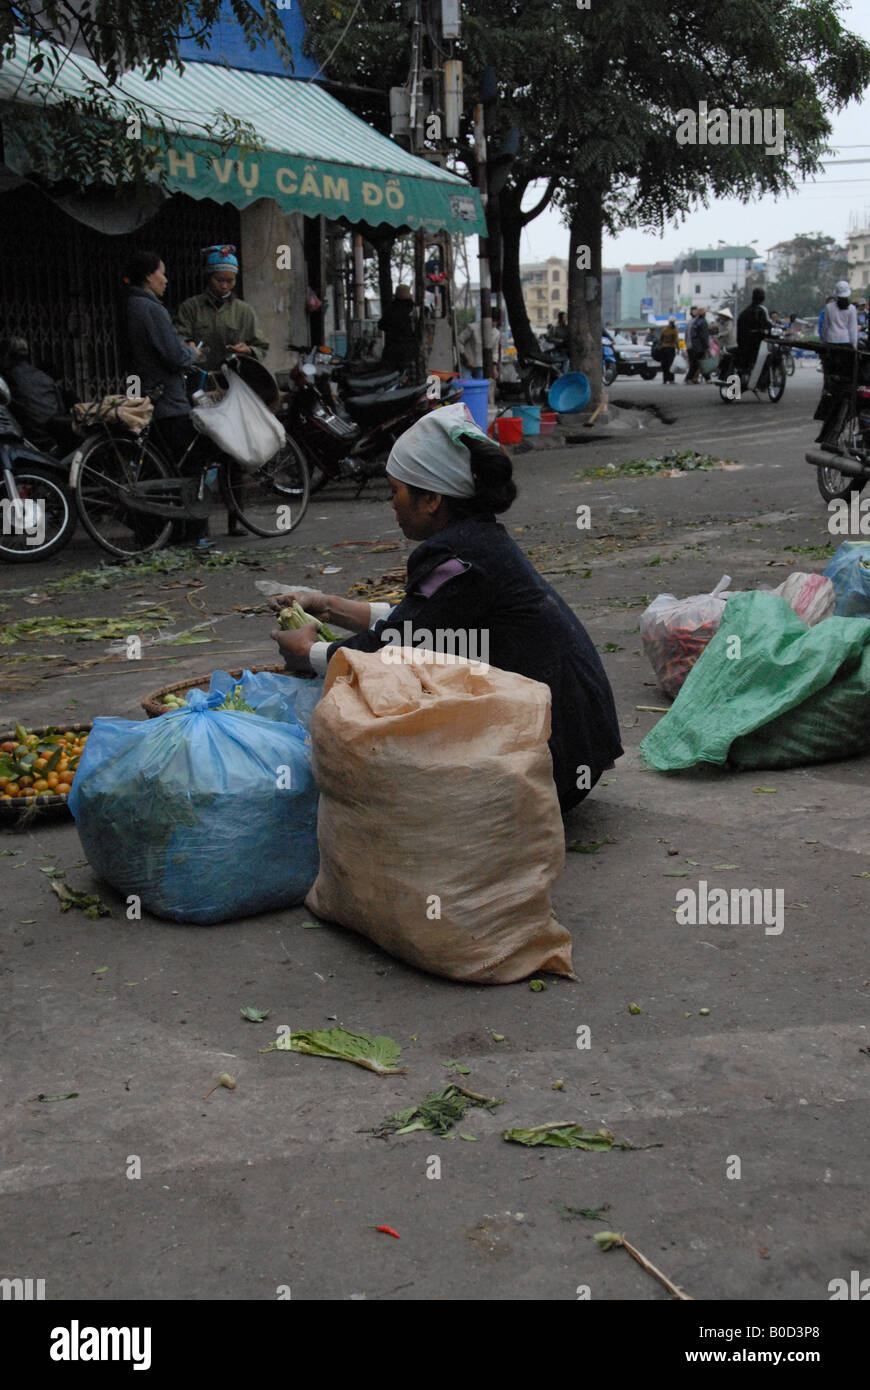 Camelots qui vendent des marchandises dans les rues de Hanoi Banque D'Images